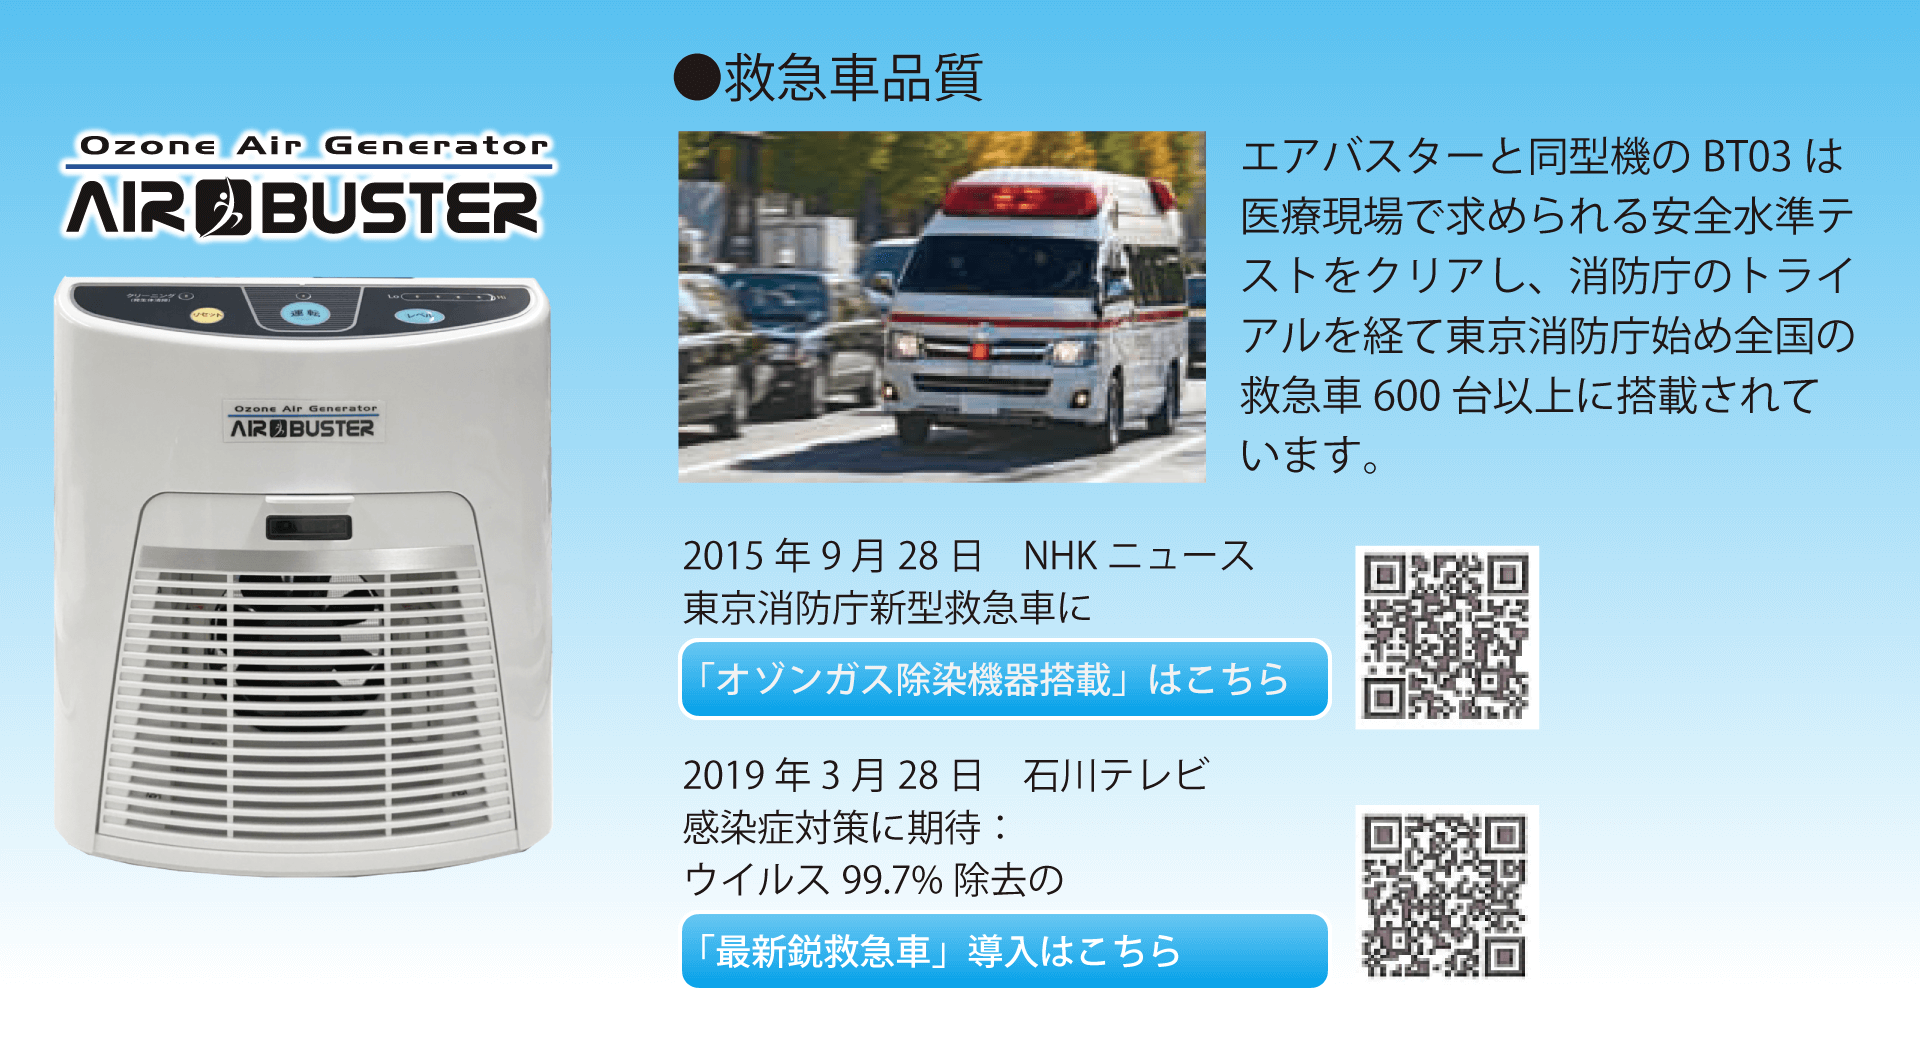 AIR BUSTER 救急車品質 エアバスターと同型機のBT03は医療現場で求められる安全水準テストをクリアし、消防庁のトライアルを経て東京消防庁始め全国の救急車600台以上に搭載されています。